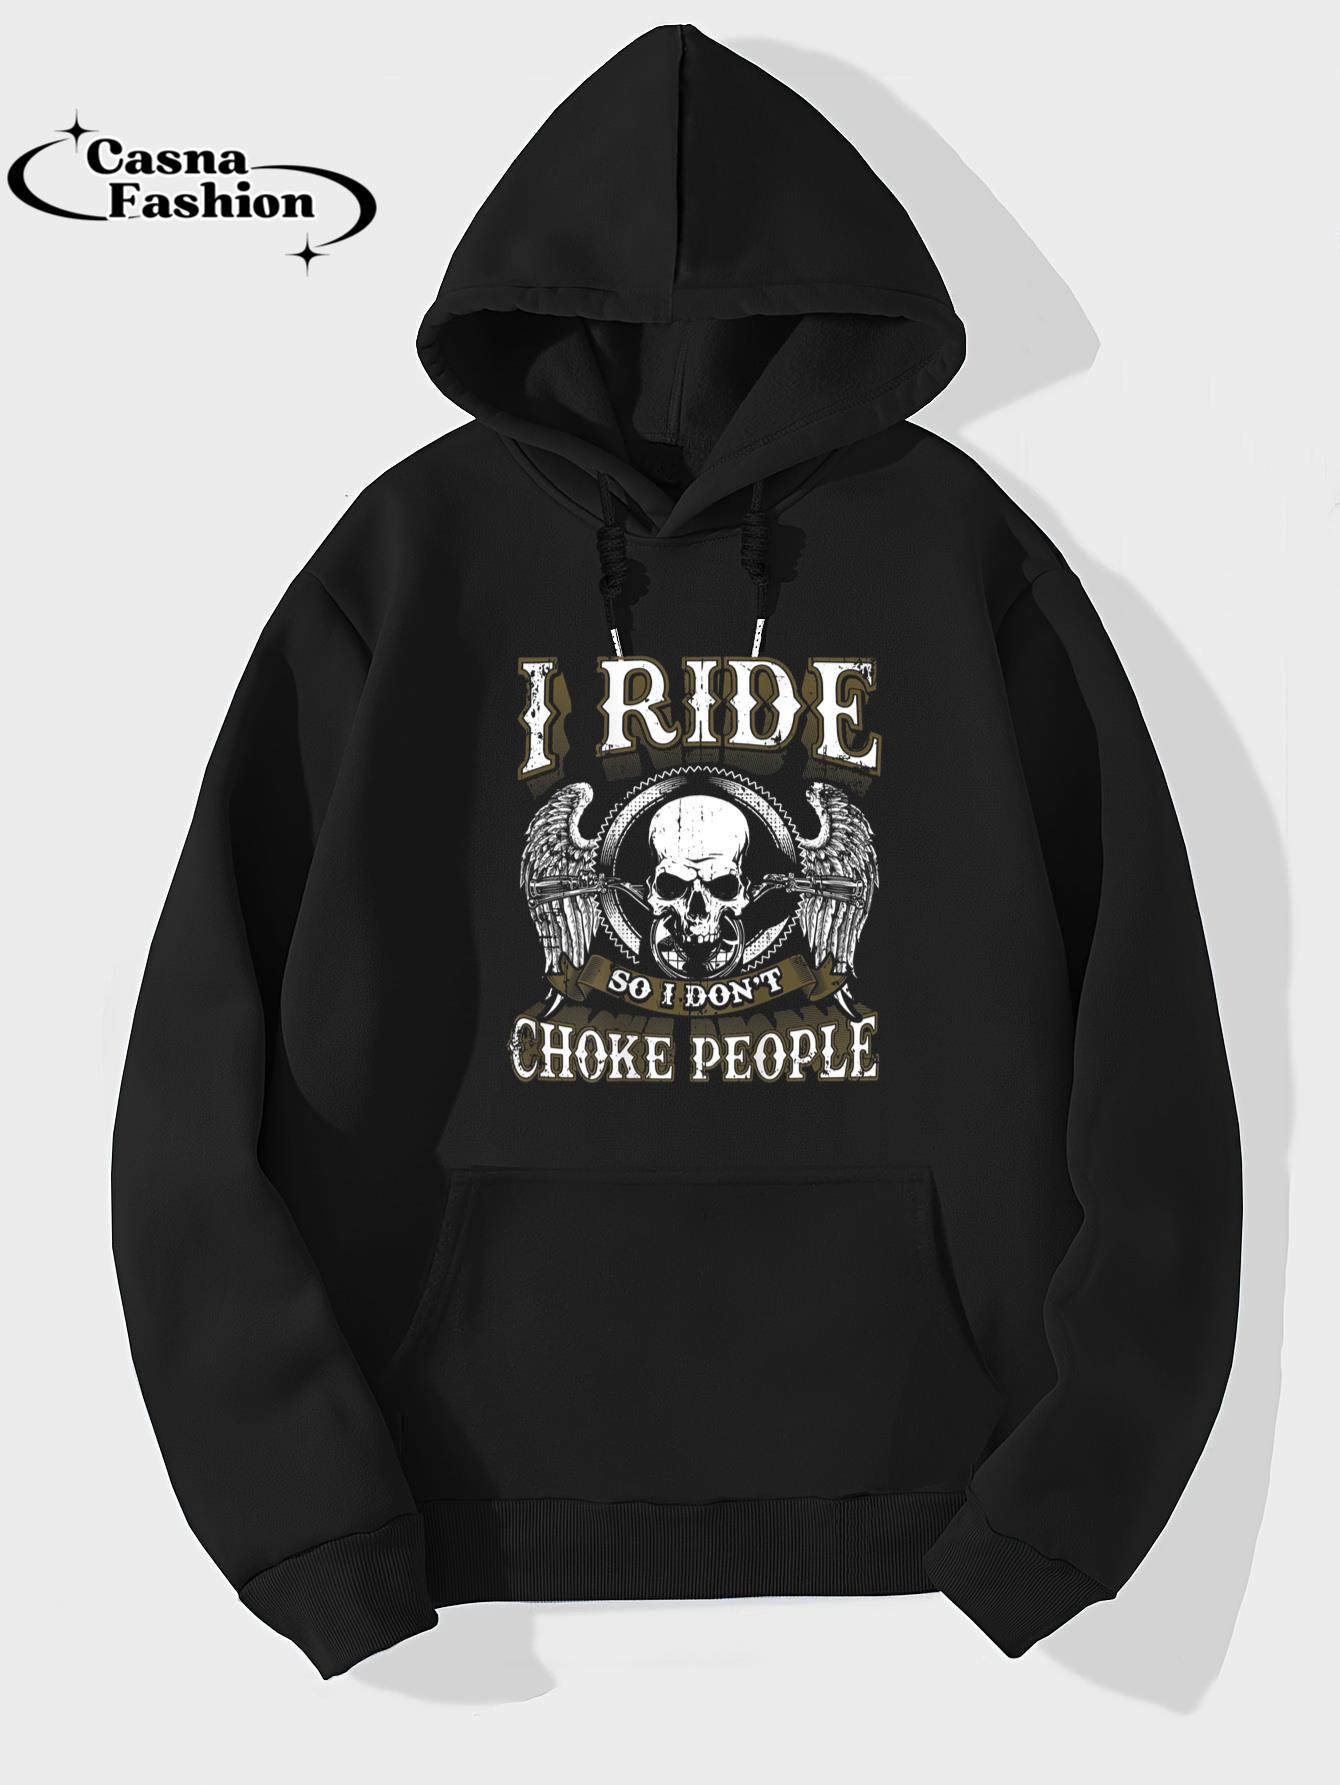 casnafashion_Hoodie_Ride Choke People Biker Wings Skull Motorcycle T-Shirt_hoodie_black hoodie